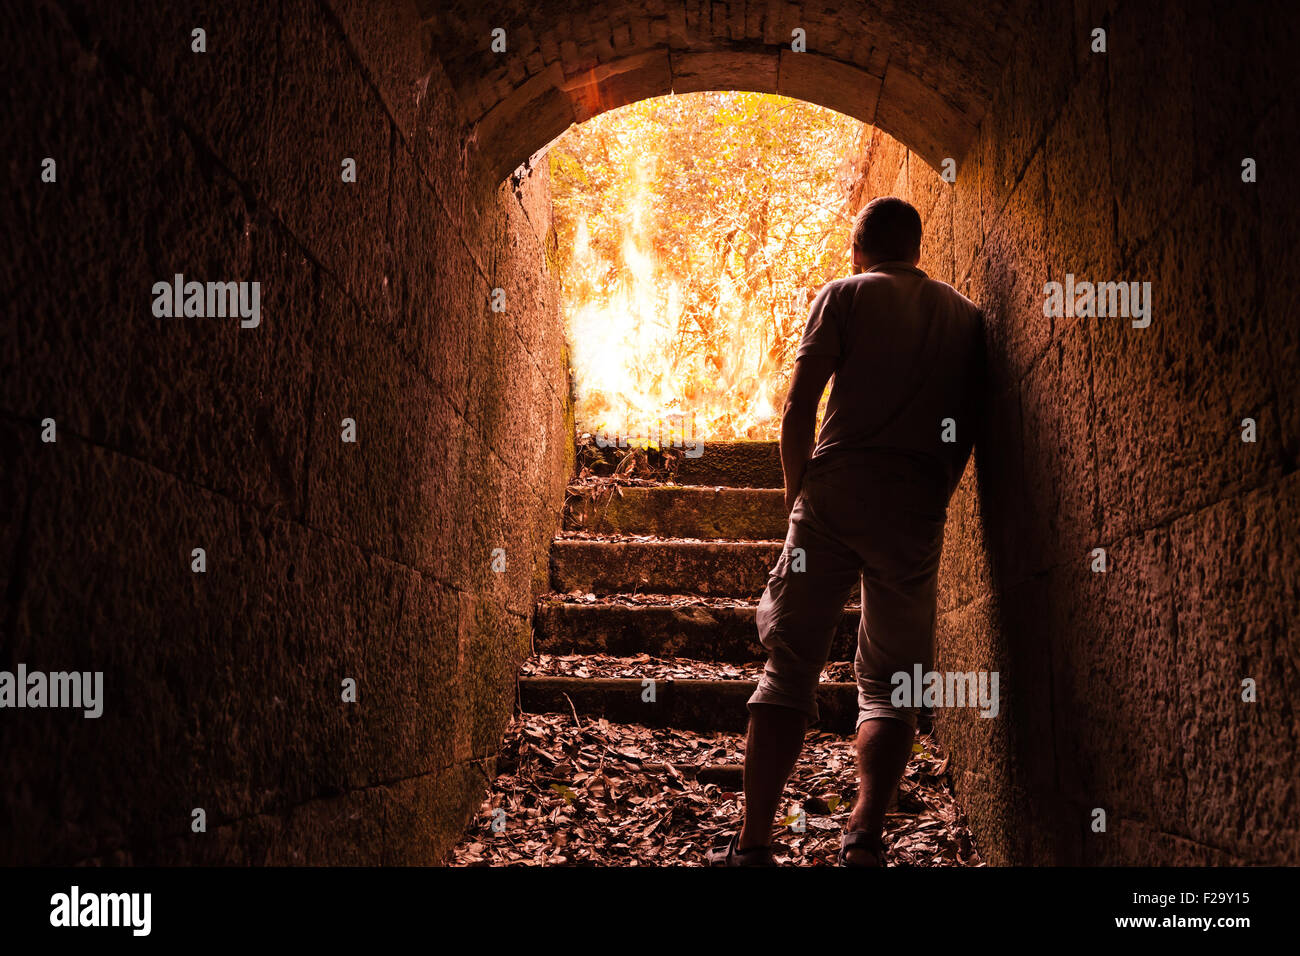 Junger Mann steht im dunklen Stein-Tunnel mit dem großen Feuer am Ende Stockfoto